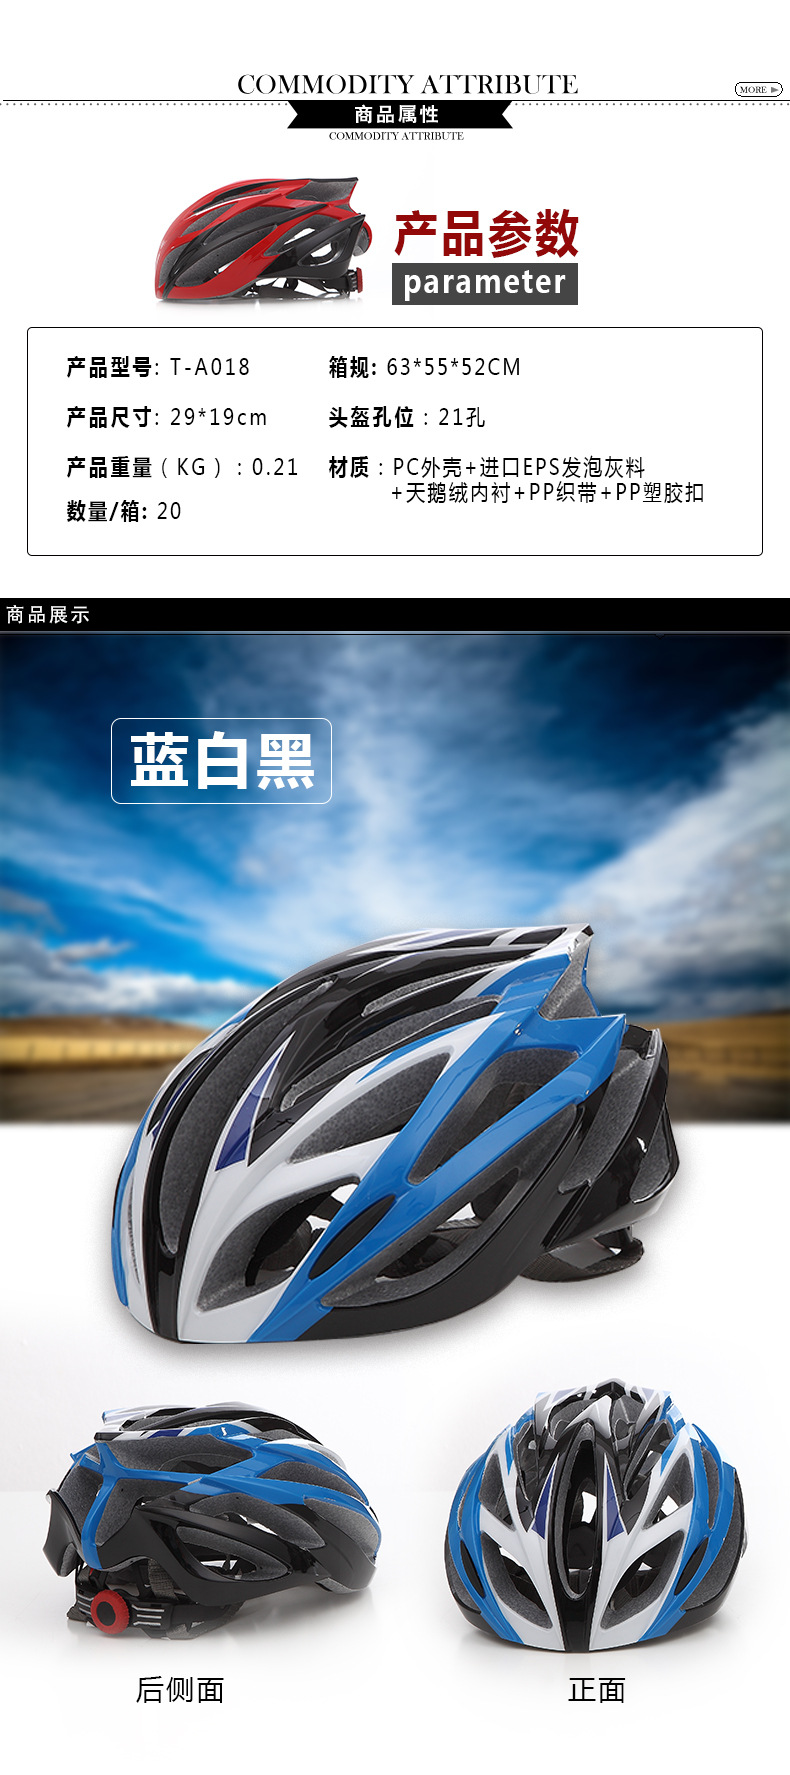 厂家直销批发骑行头盔单车头盔一体成型自行车头盔速滑头盔安全帽示例图5